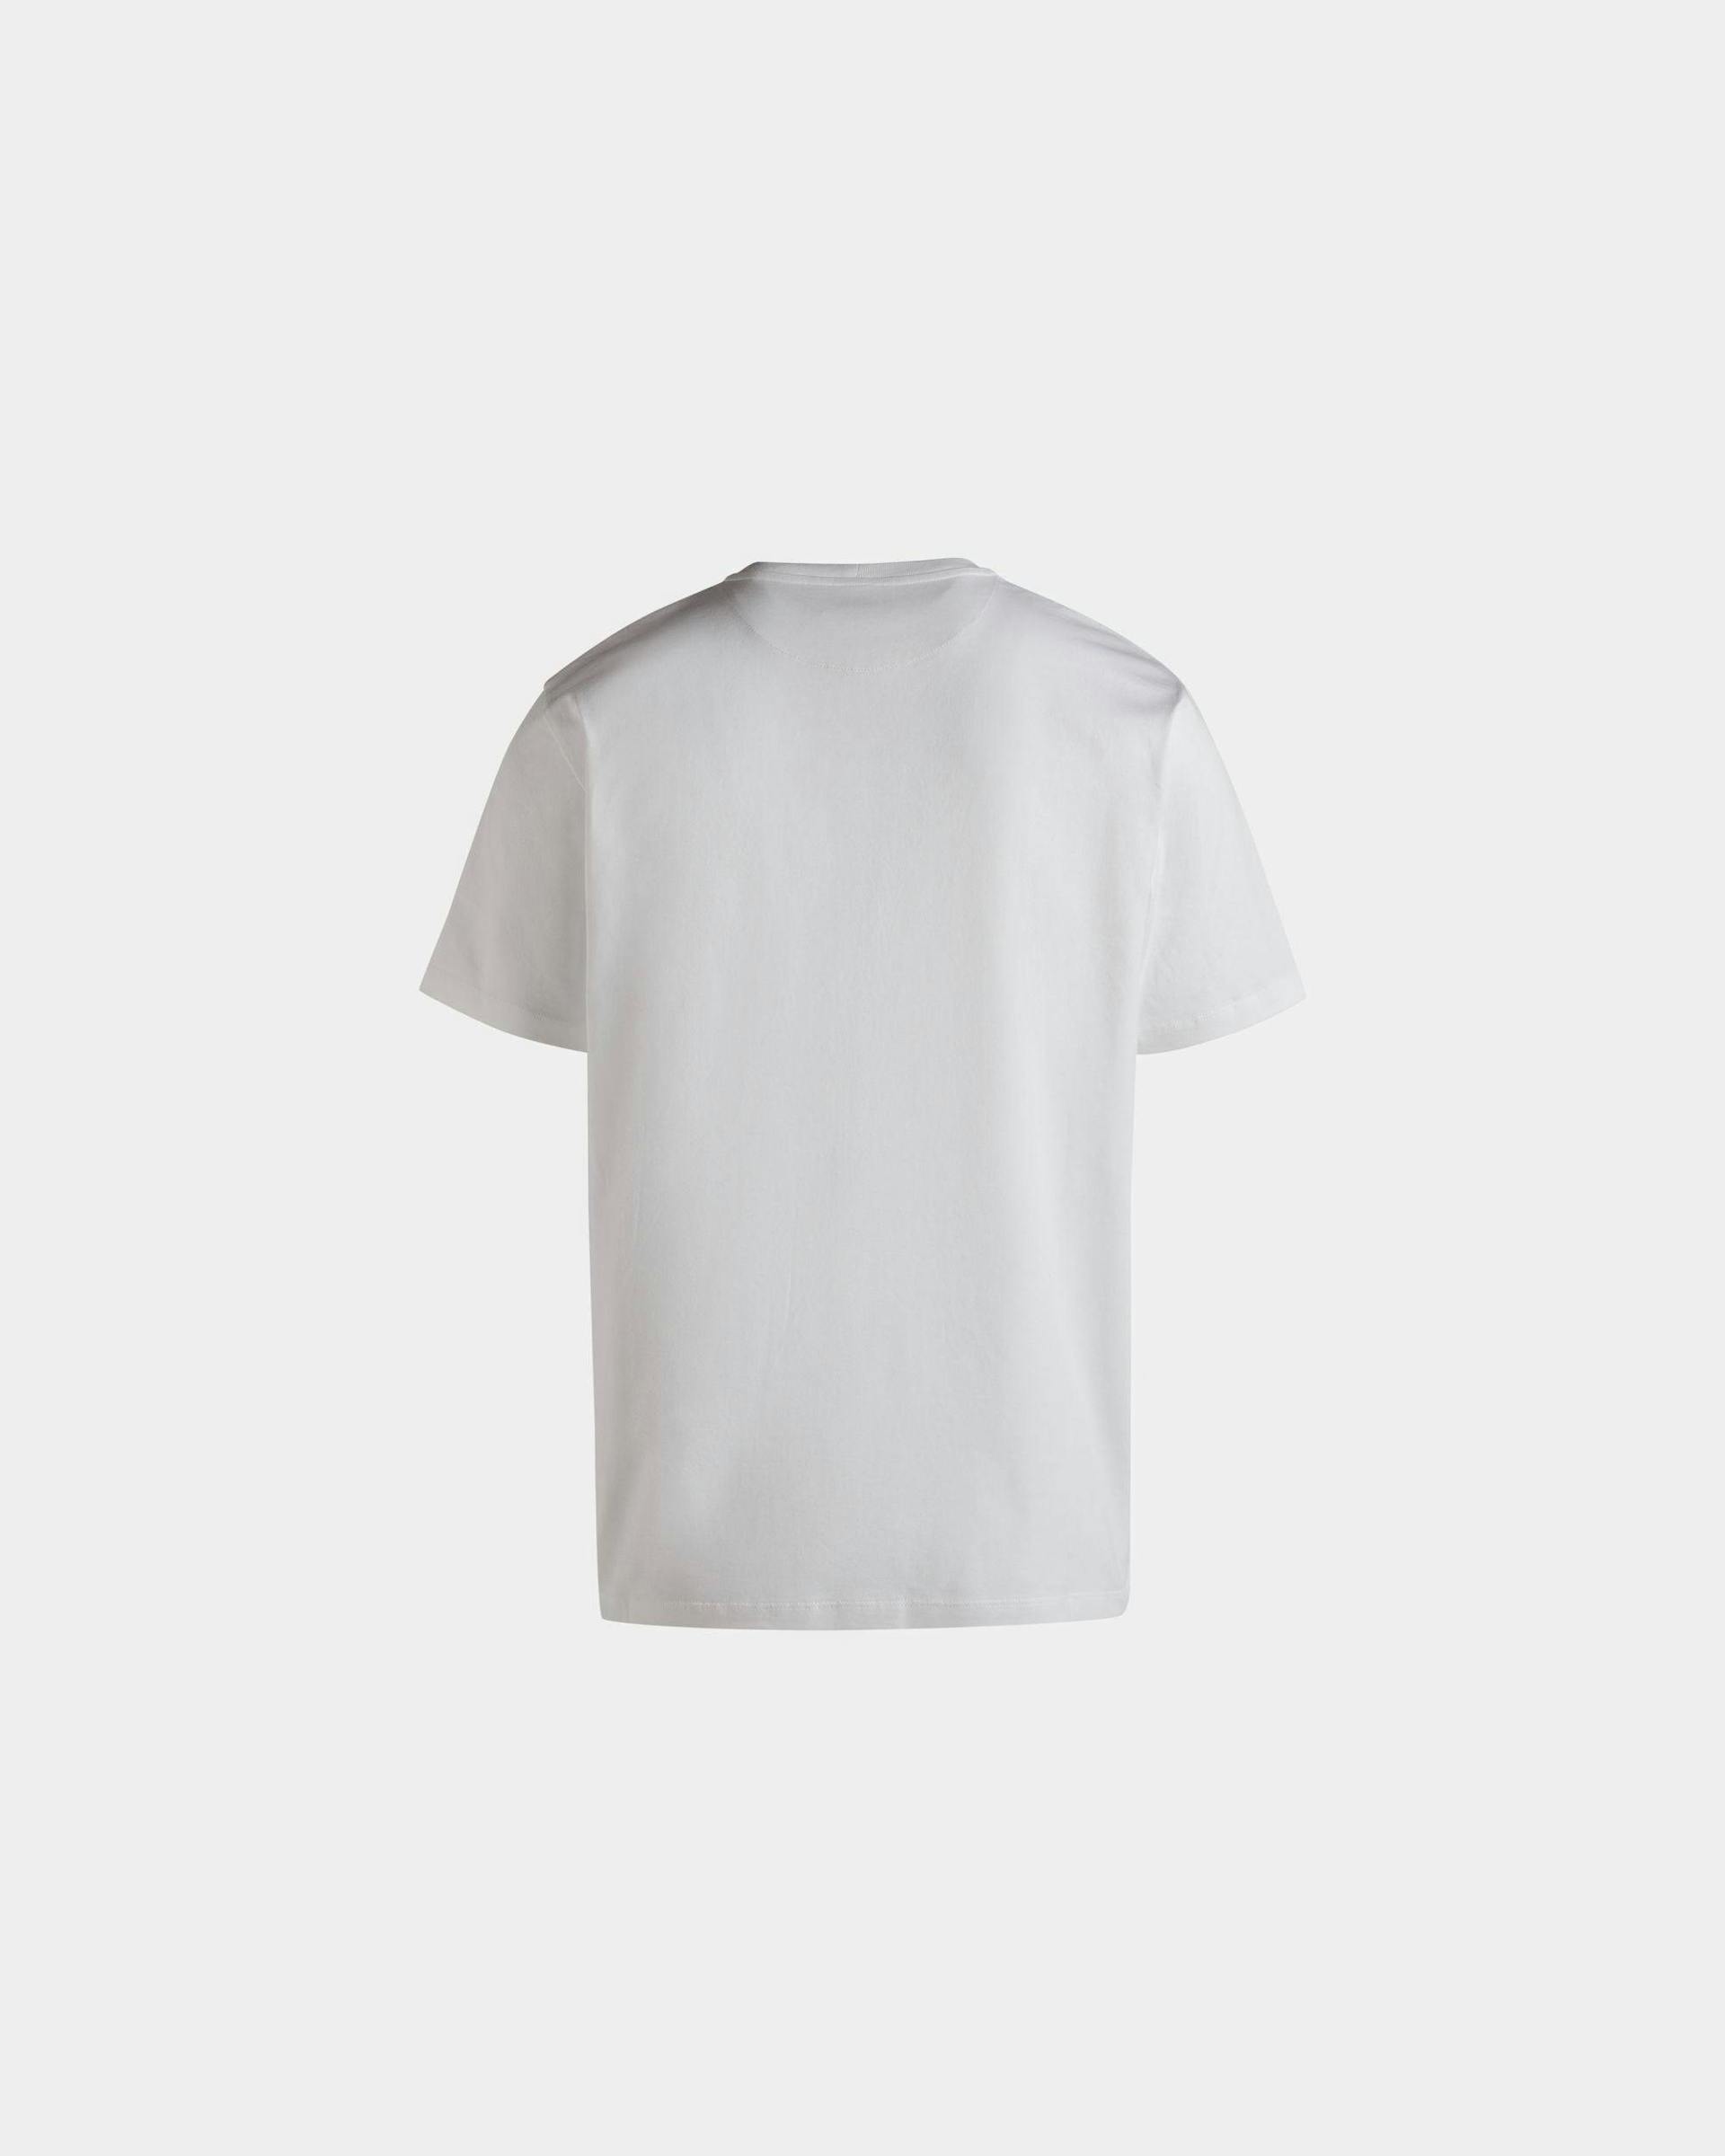 Men's T-Shirt In White Cotton | Bally | Still Life Back